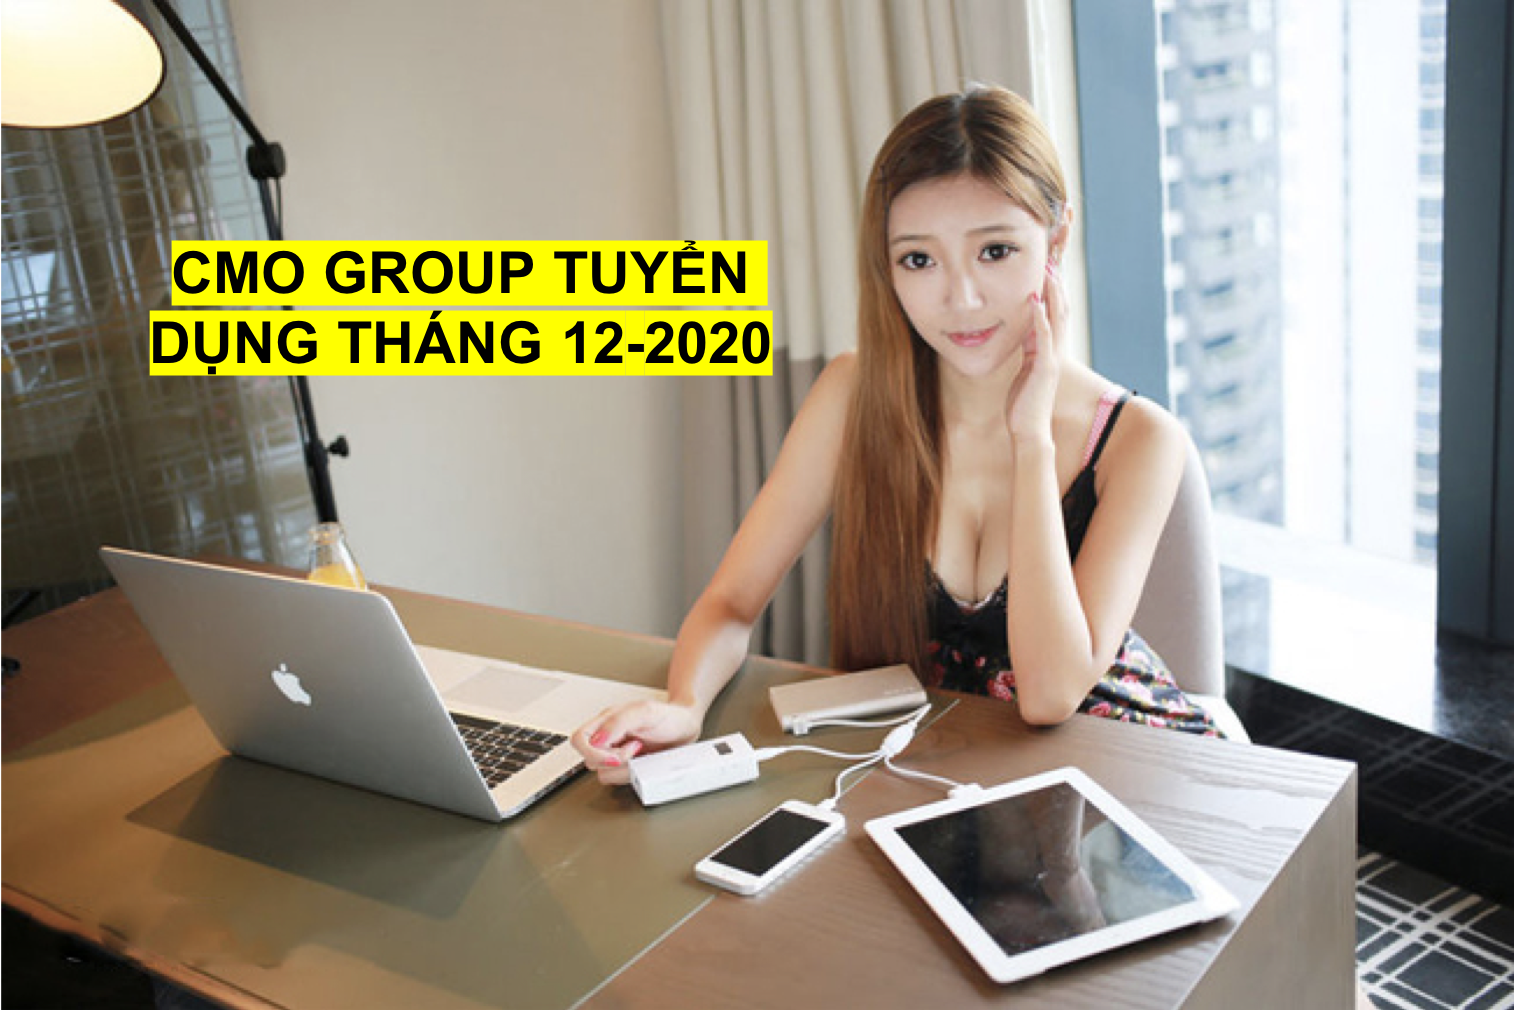 CMO-GROUP-TUYEN-DUNG-THANG-12-2020